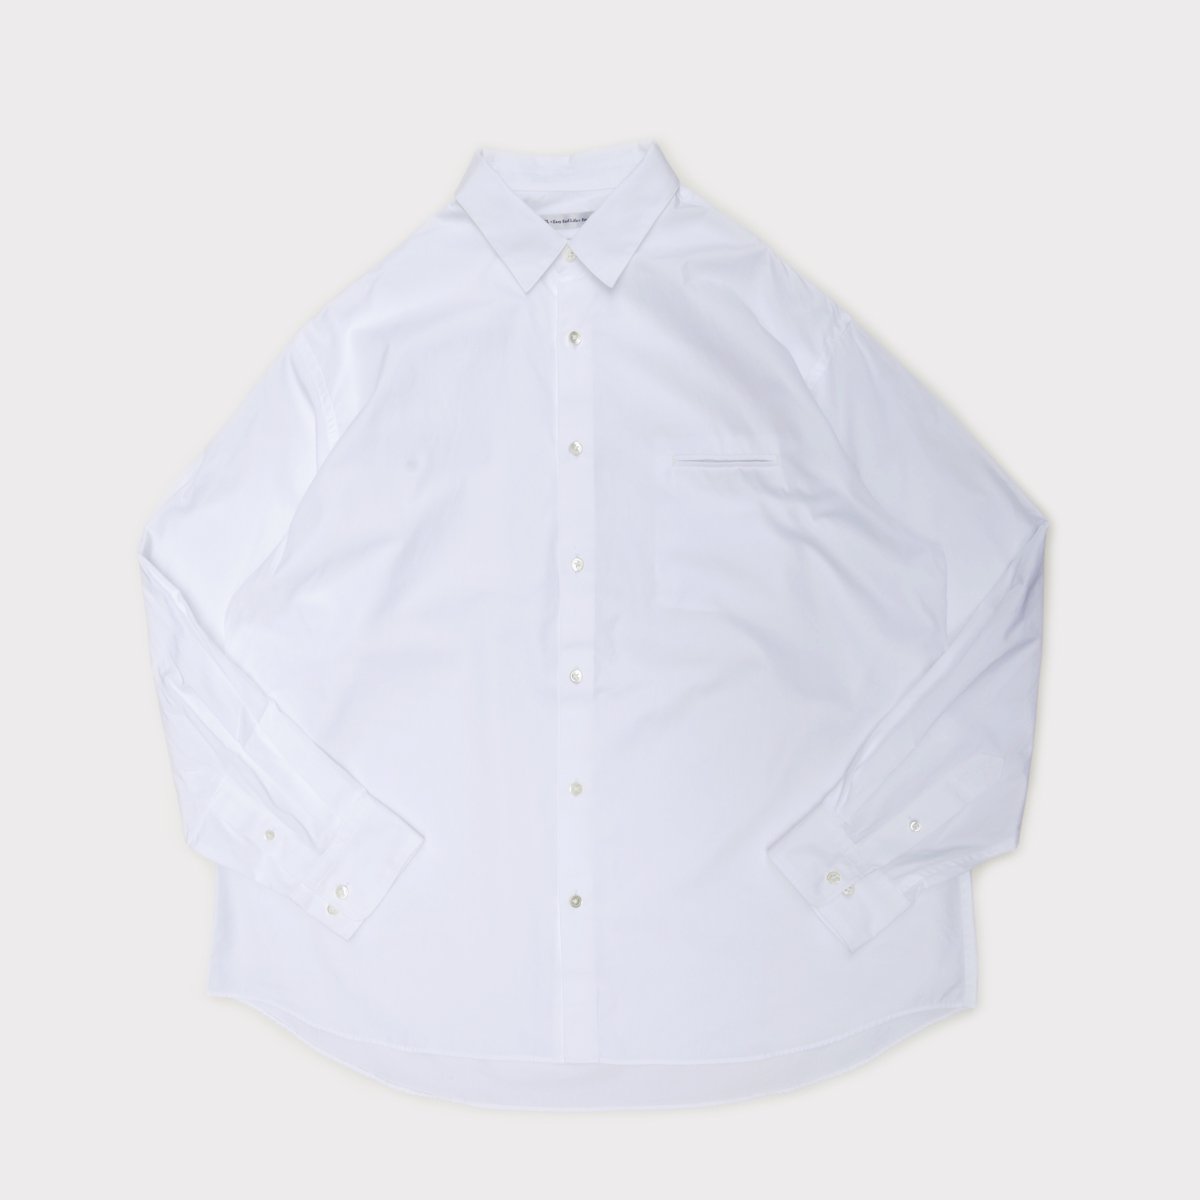 Grooming Shirt  White